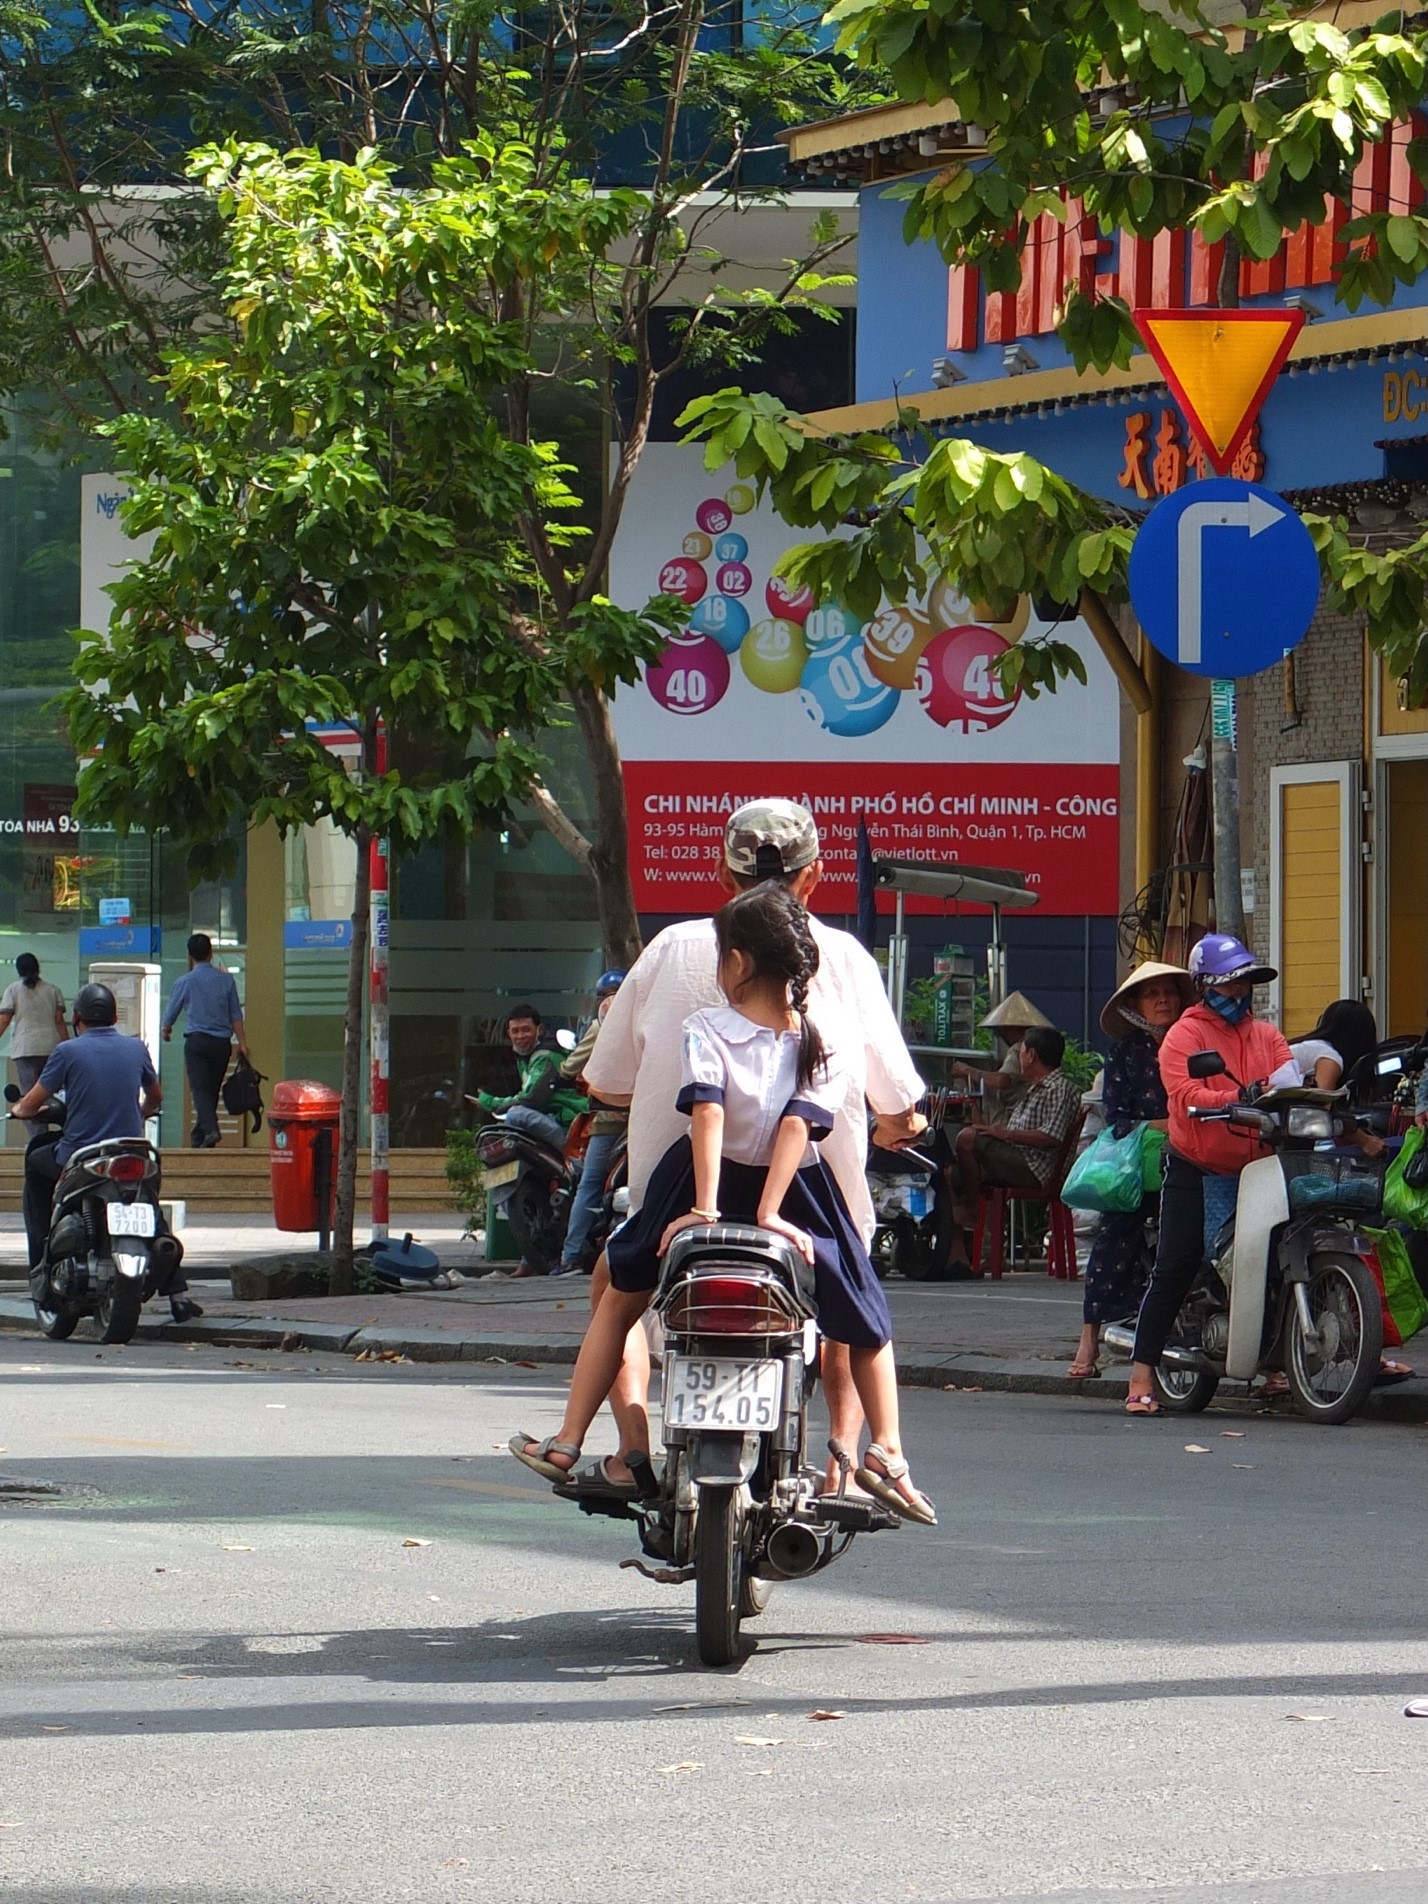 5 Motos Ho Chih Minh Ville.jpg